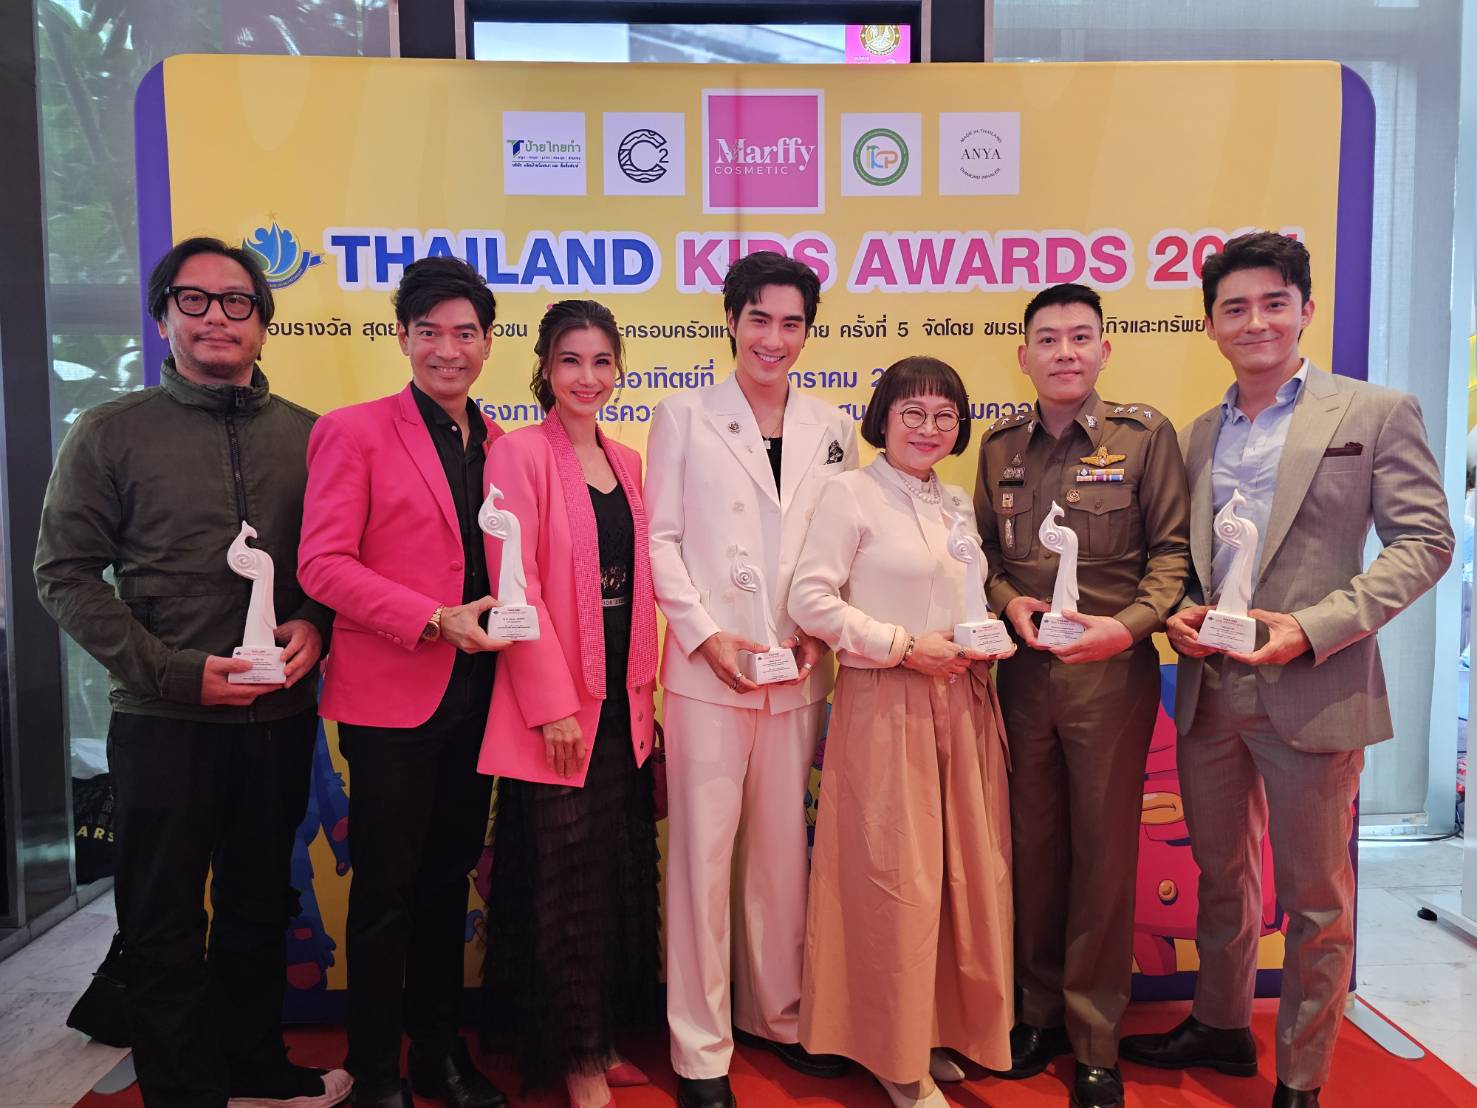 ออกไซด์ แปง คัมแบ็ค!!! คว้ารางวัล ส่งเสริมเยาวชนด้านภาพยนตร์ดีเด่น “หน่อง อรุโณชา” นำทีมคนบันเทิงเข้ารับรางวัลงาน Thailand Kids Awards2024